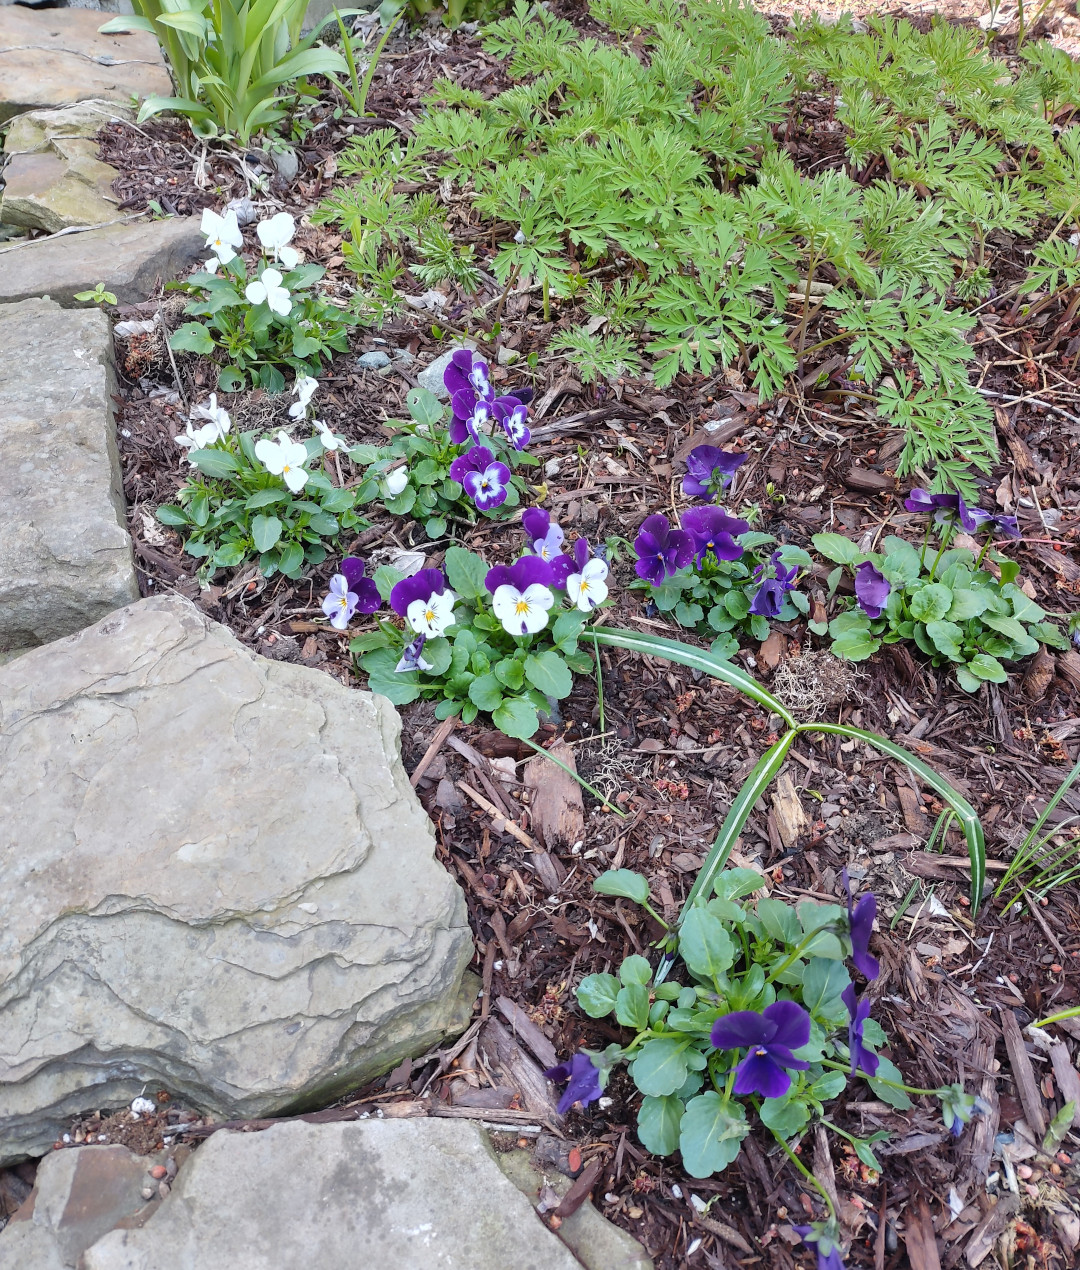 Purple and white violas next to stones